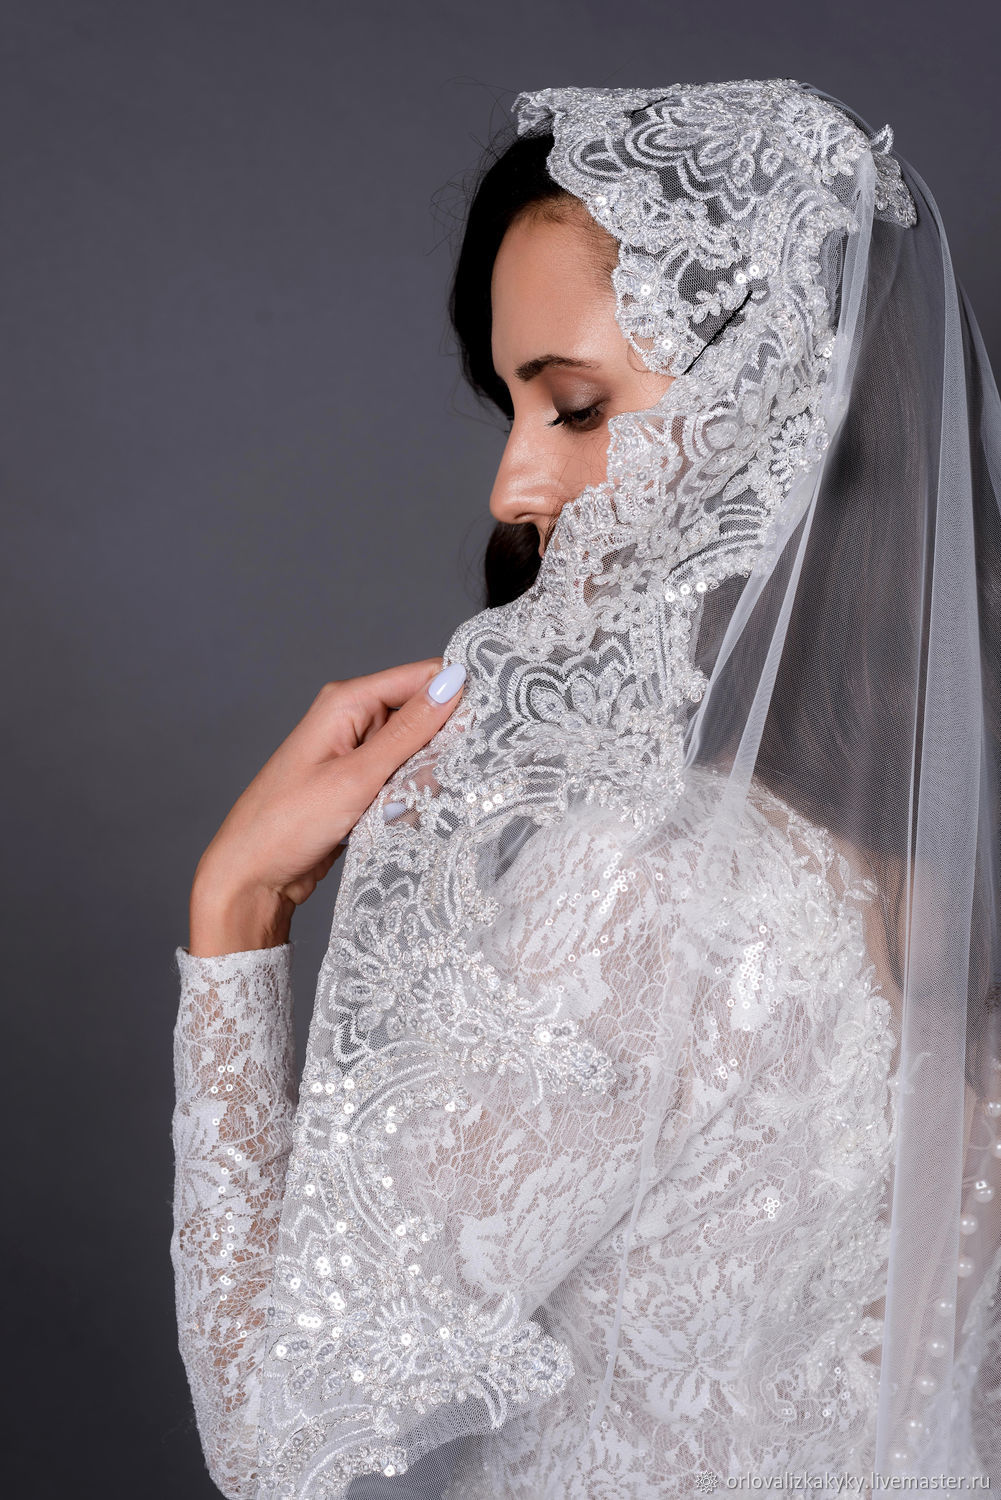 Фата невесты - многообразие вариантов